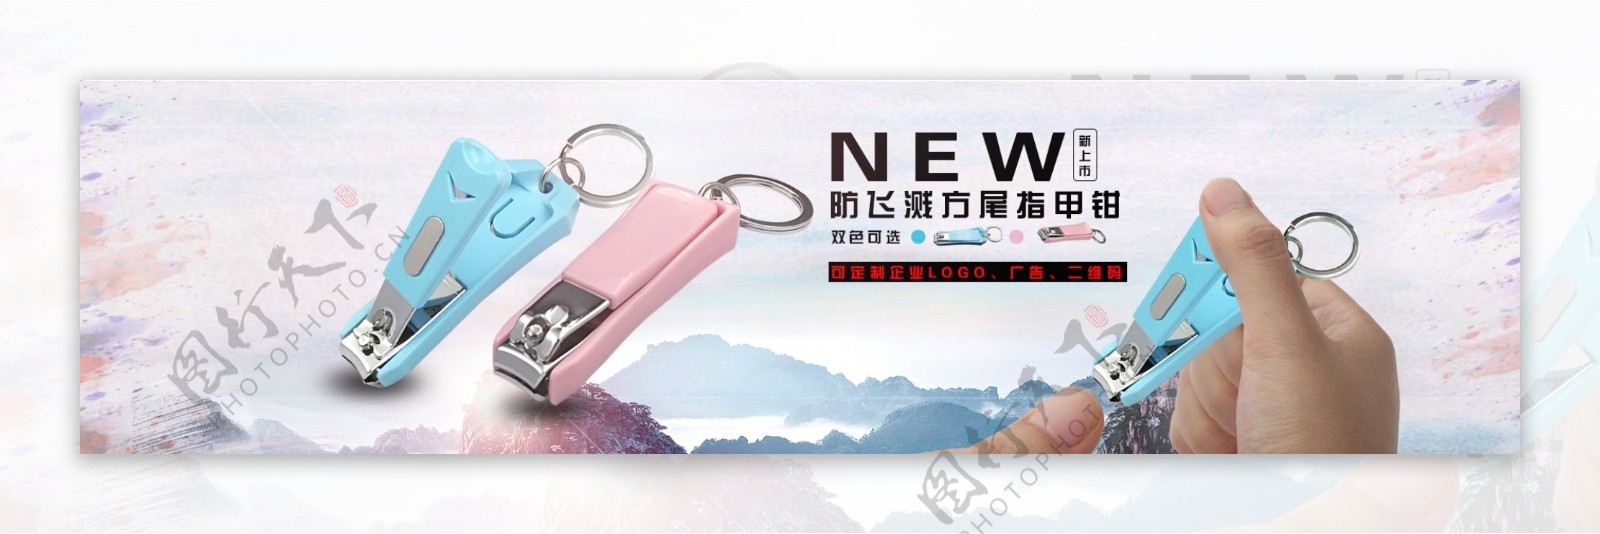 钥匙扣指甲钳中国风陶宝海报设计素材下载